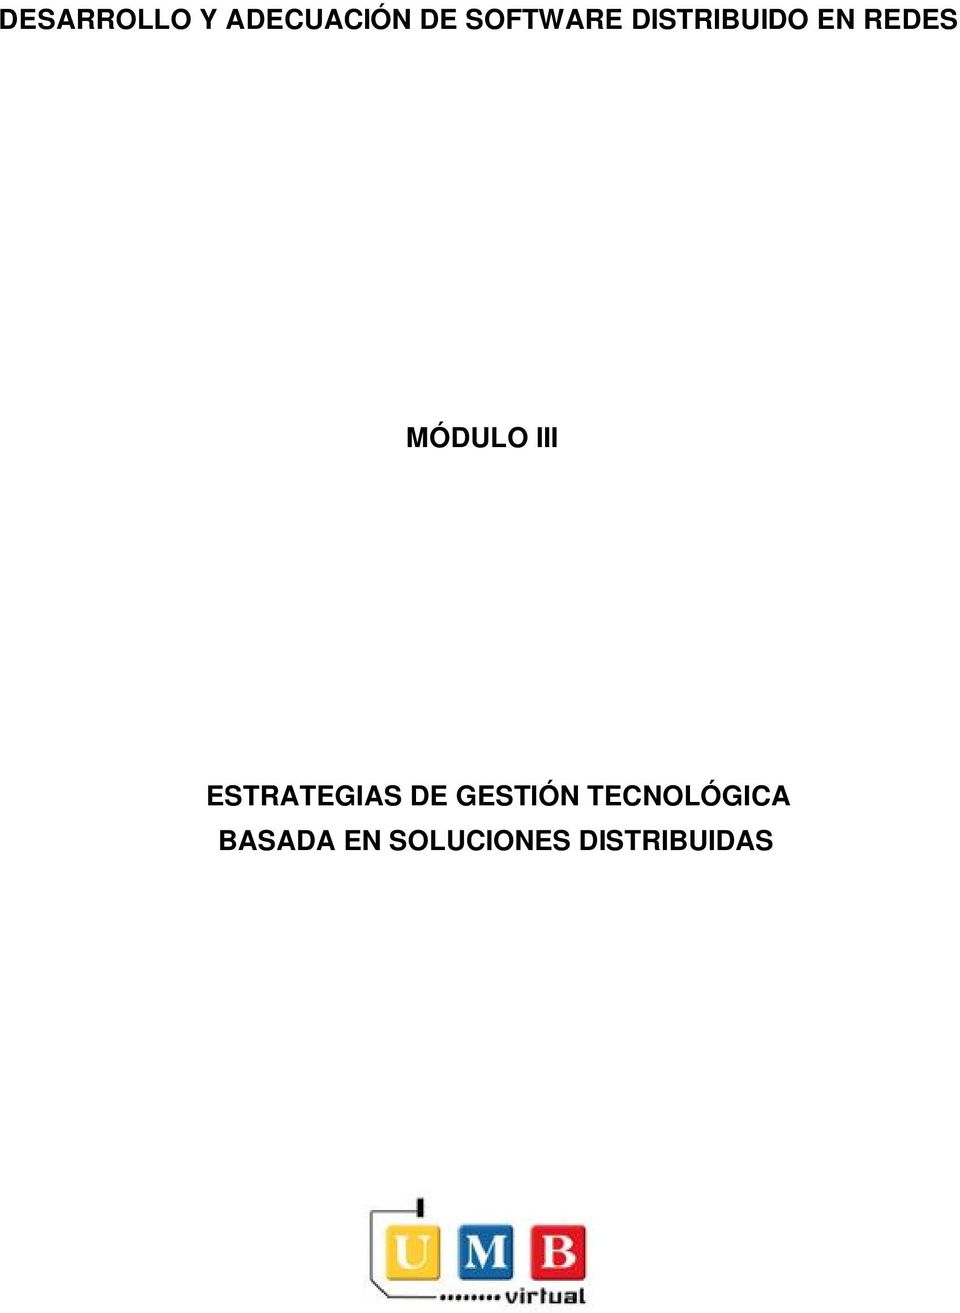 MÓDULO III ESTRATEGIAS DE GESTIÓN